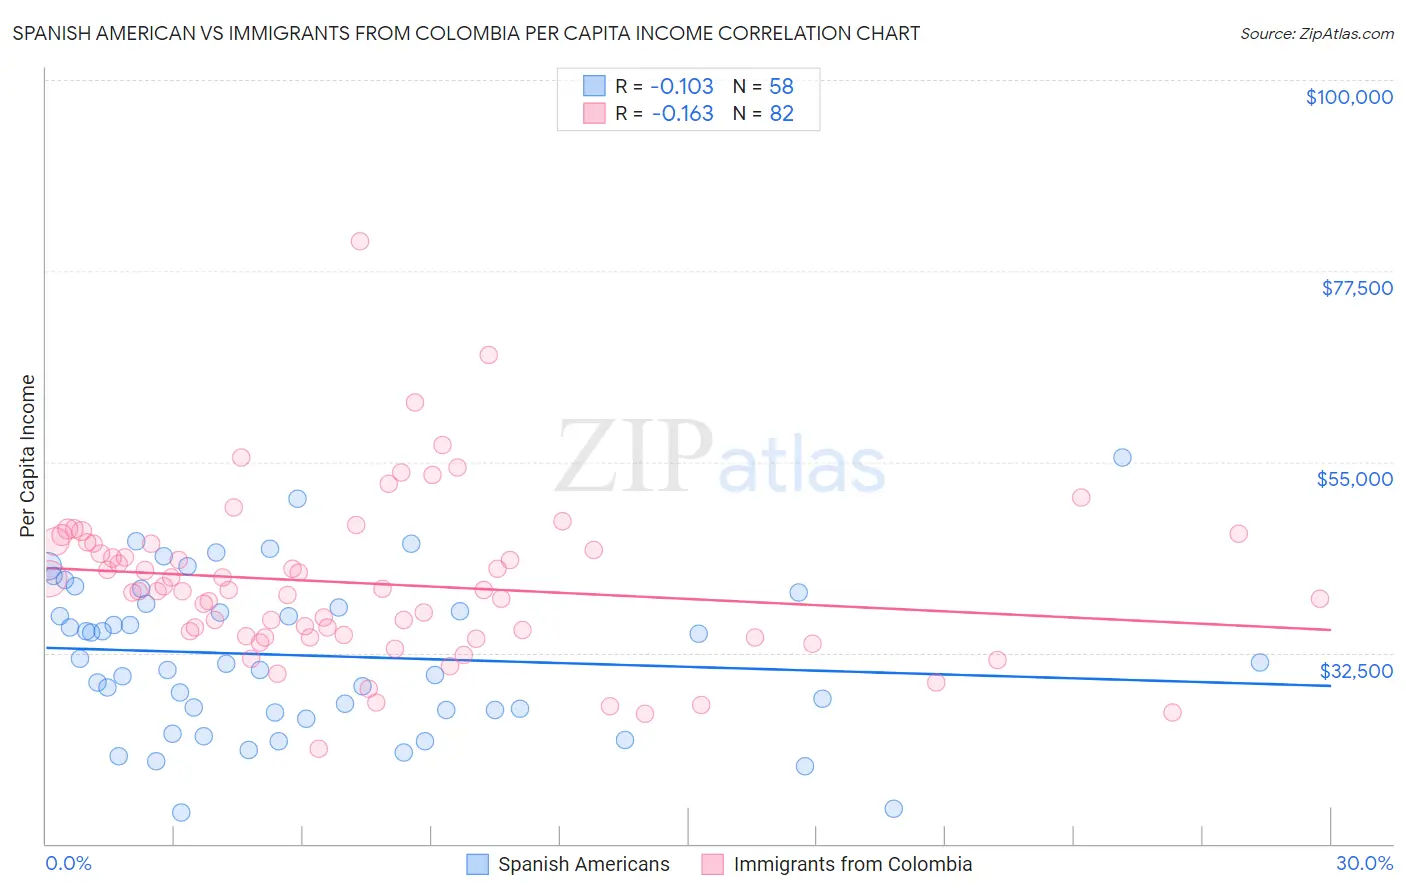 Spanish American vs Immigrants from Colombia Per Capita Income